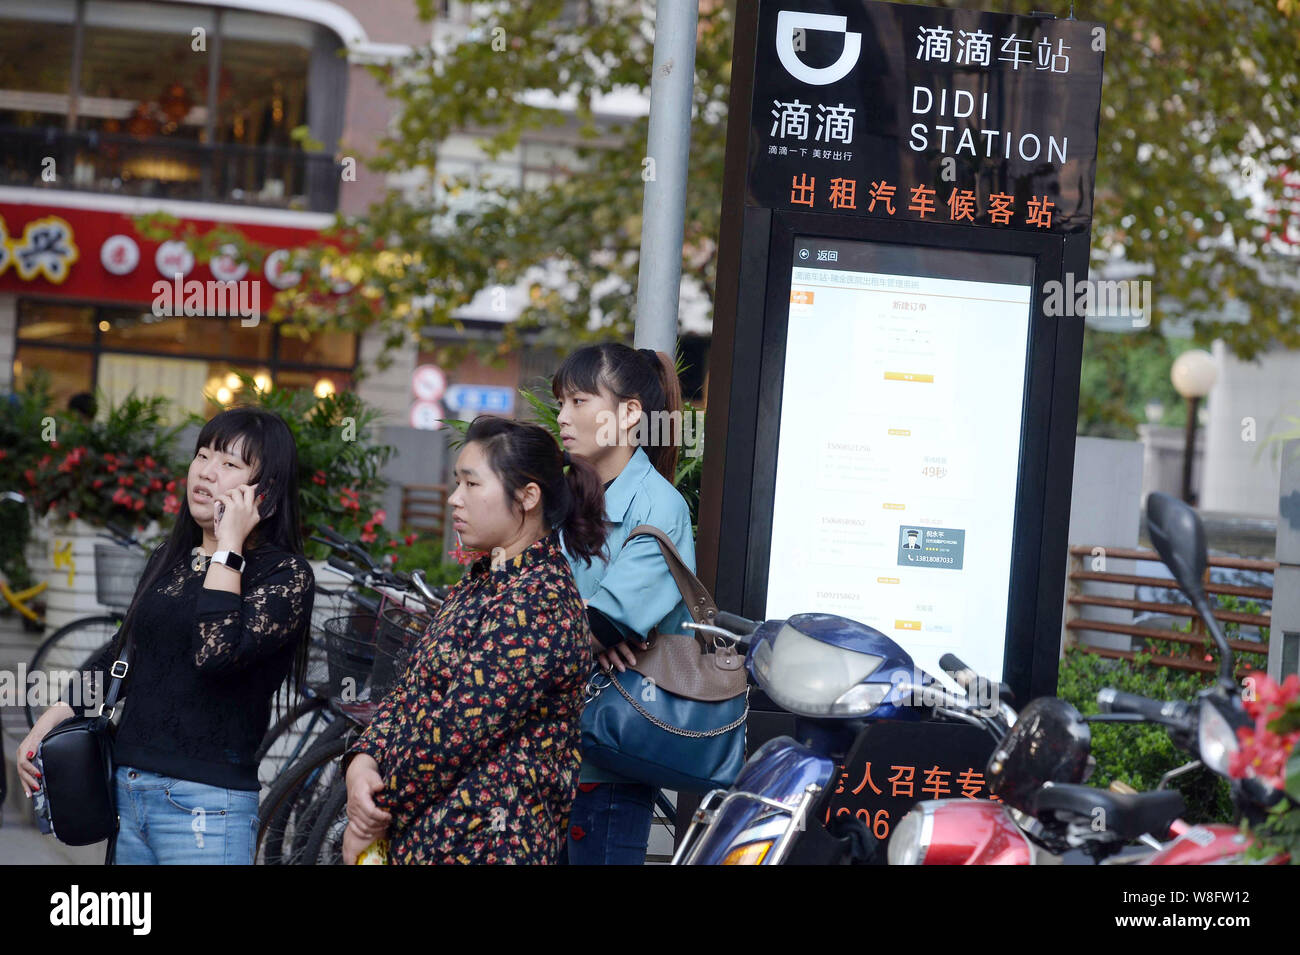 Chinesische Passagiere warten Autos an einem Taxistand von Taxi-hageln app Didi in Shanghai, China, 15. Oktober 2015. Chinesische beliebte Taxi - hageln App hat Stockfoto